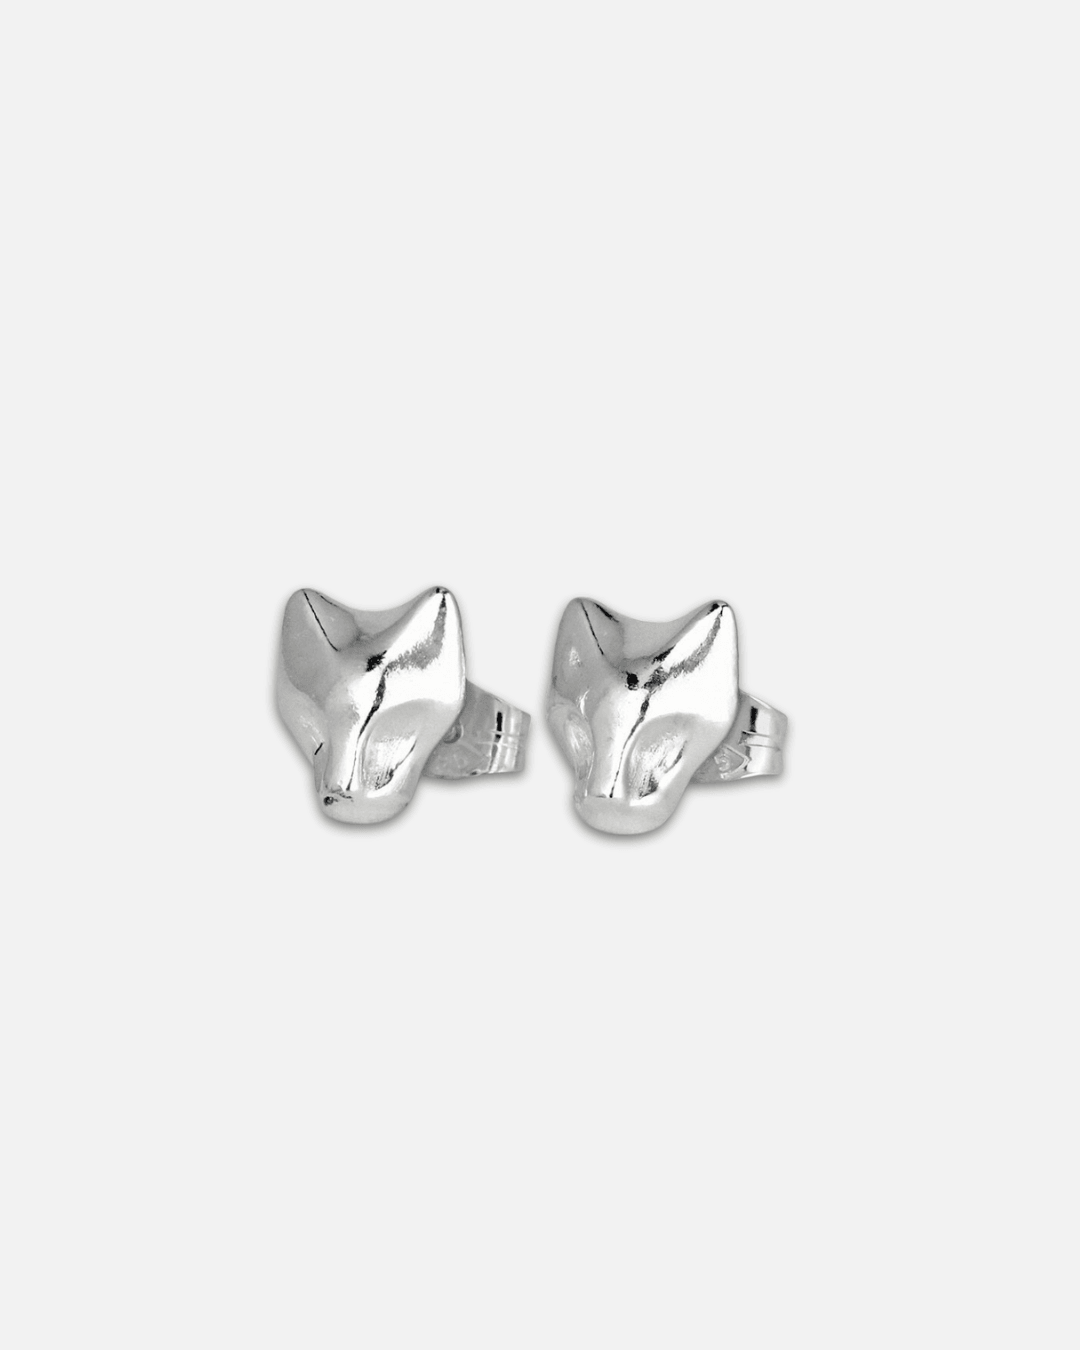 Lynx Earrings - Sterling Silver Min - Freya & Thor of Sweden